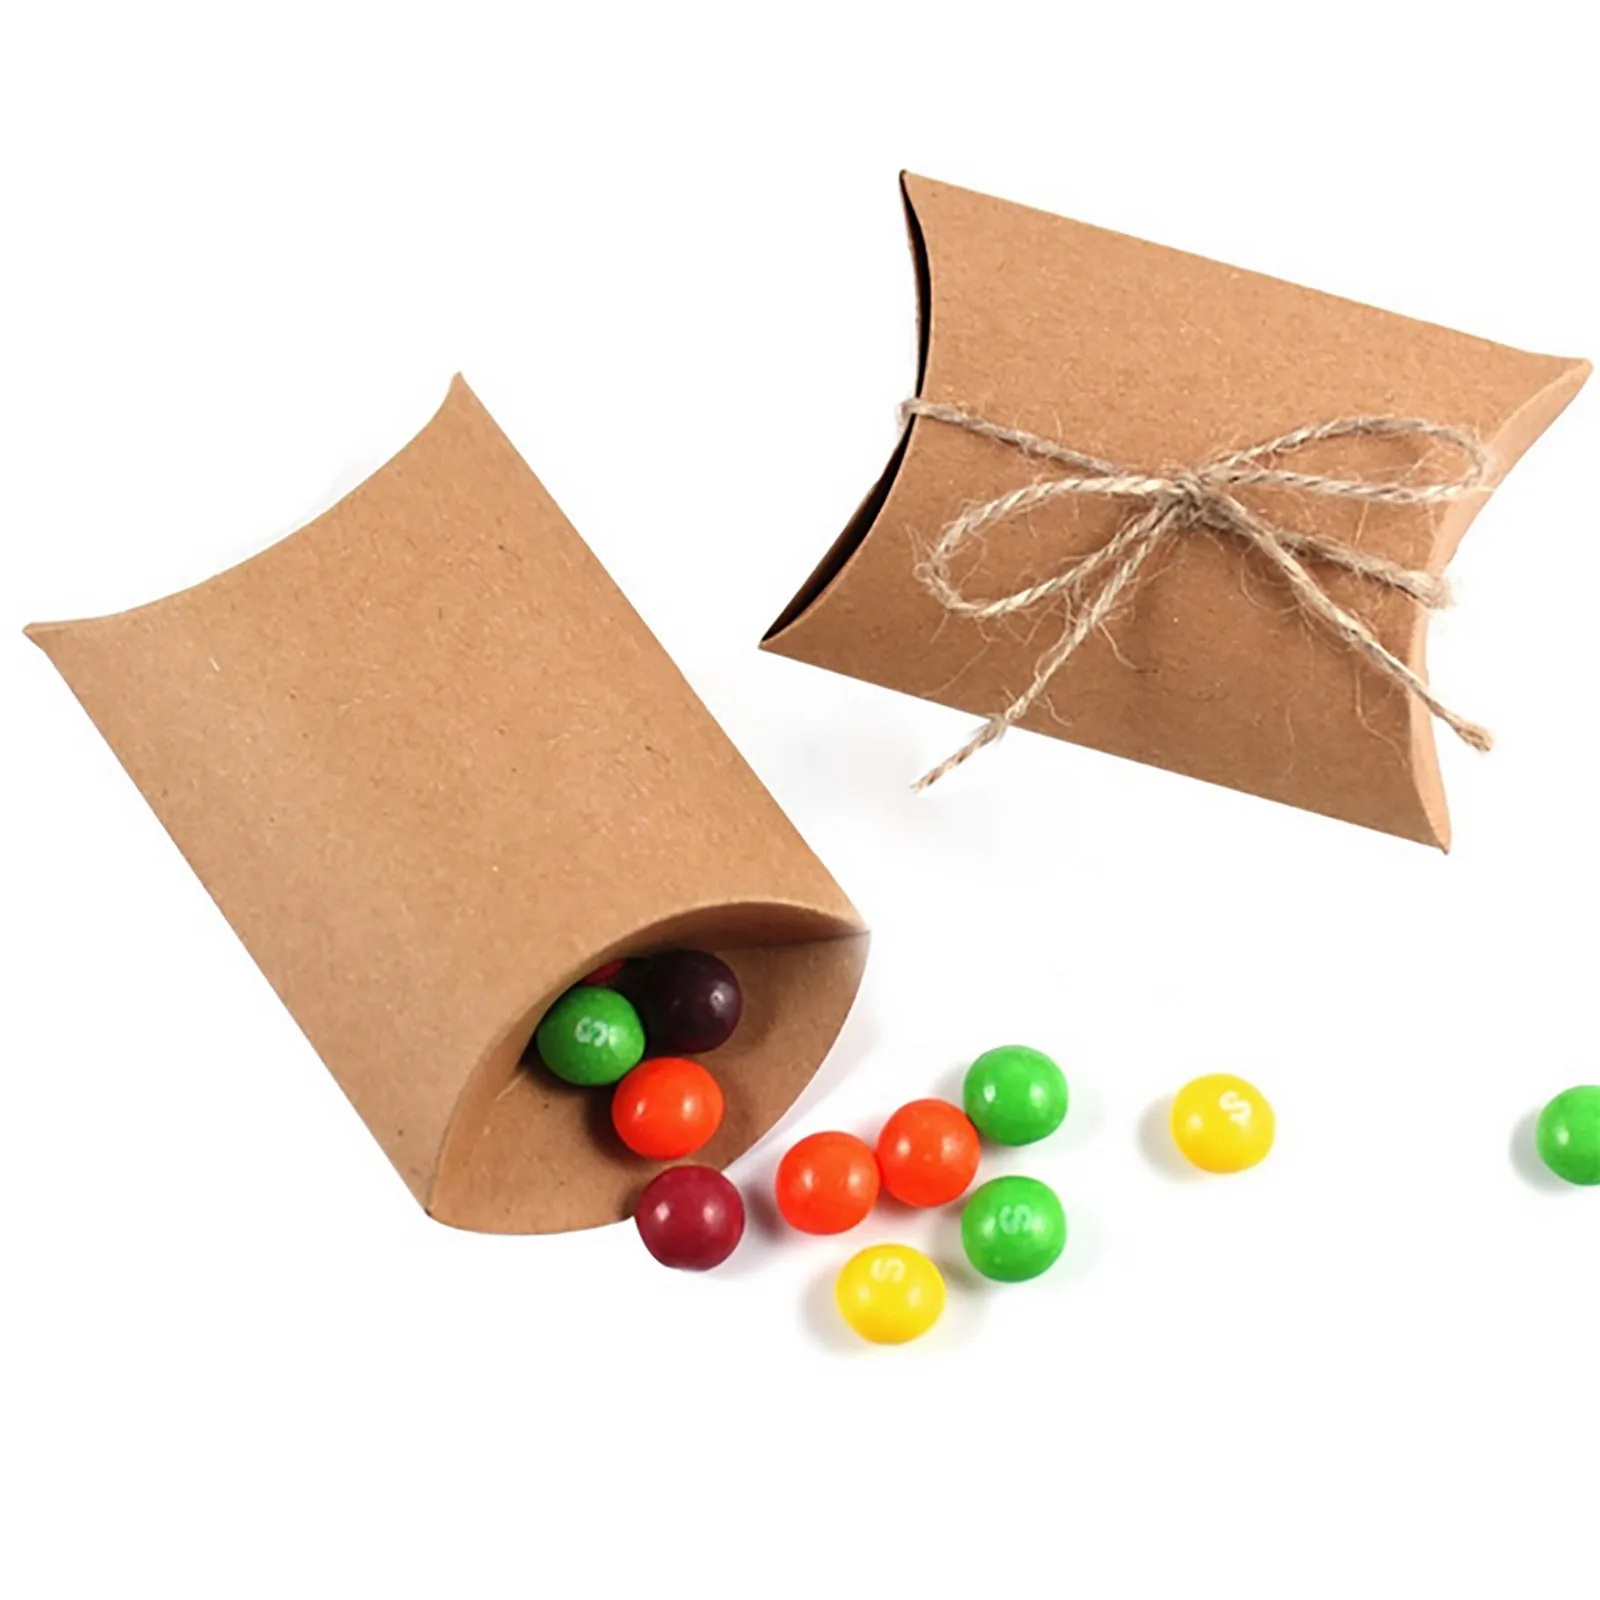 

50pcs/lot Kraft Paper Gift Candy Box Cute Pillow Box Shape Wedding Favor Party Decor Wholesales 9cm x 13cm